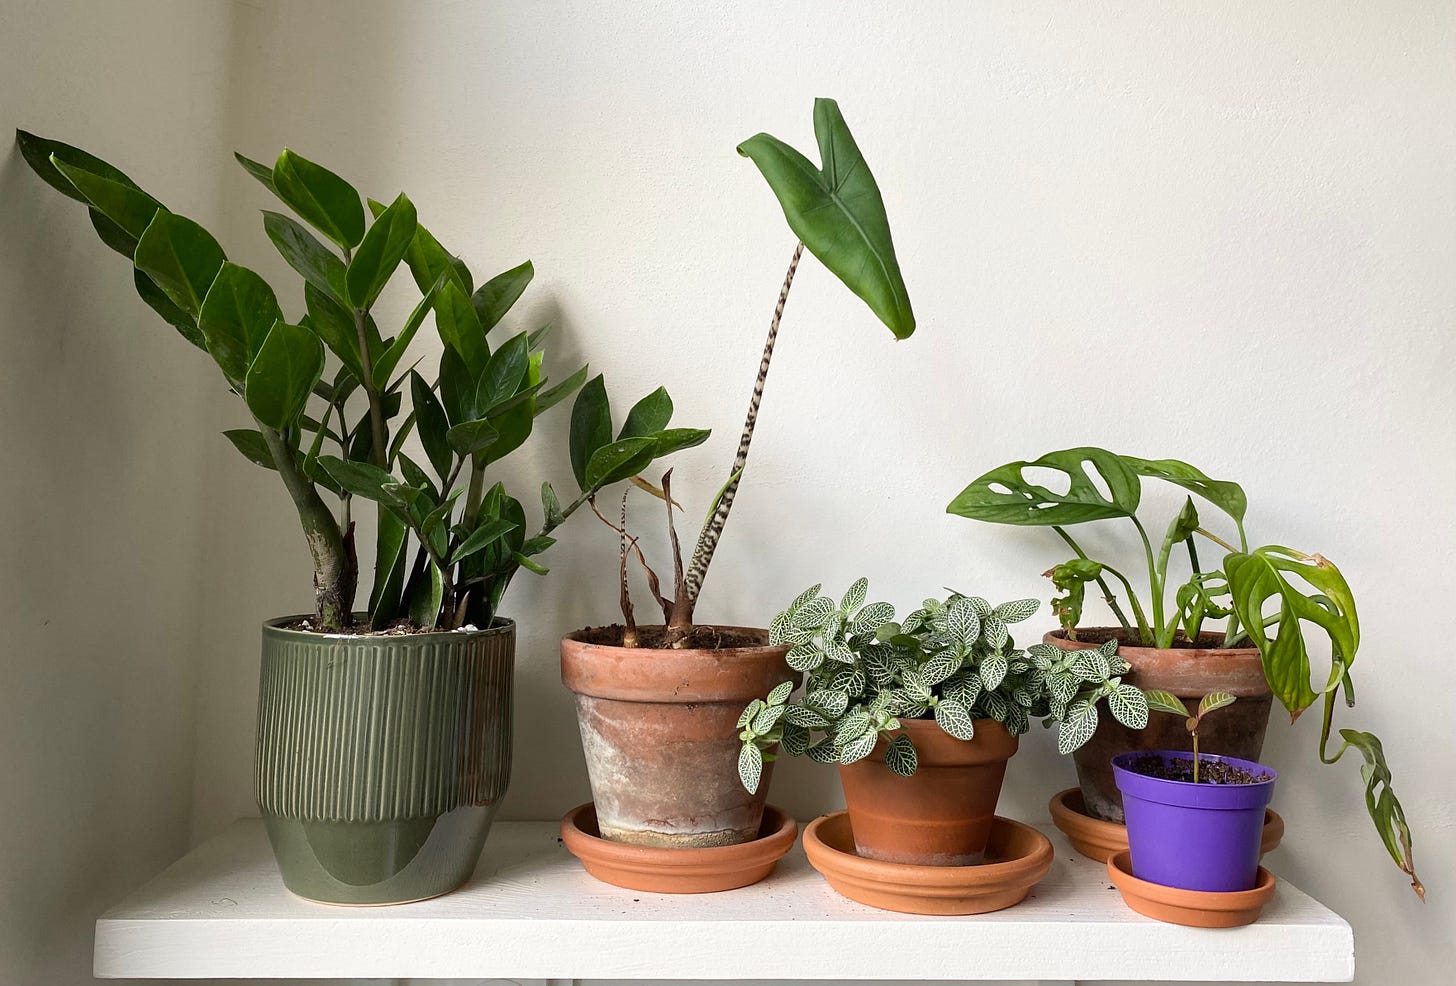 Plants on my kitchen shelf